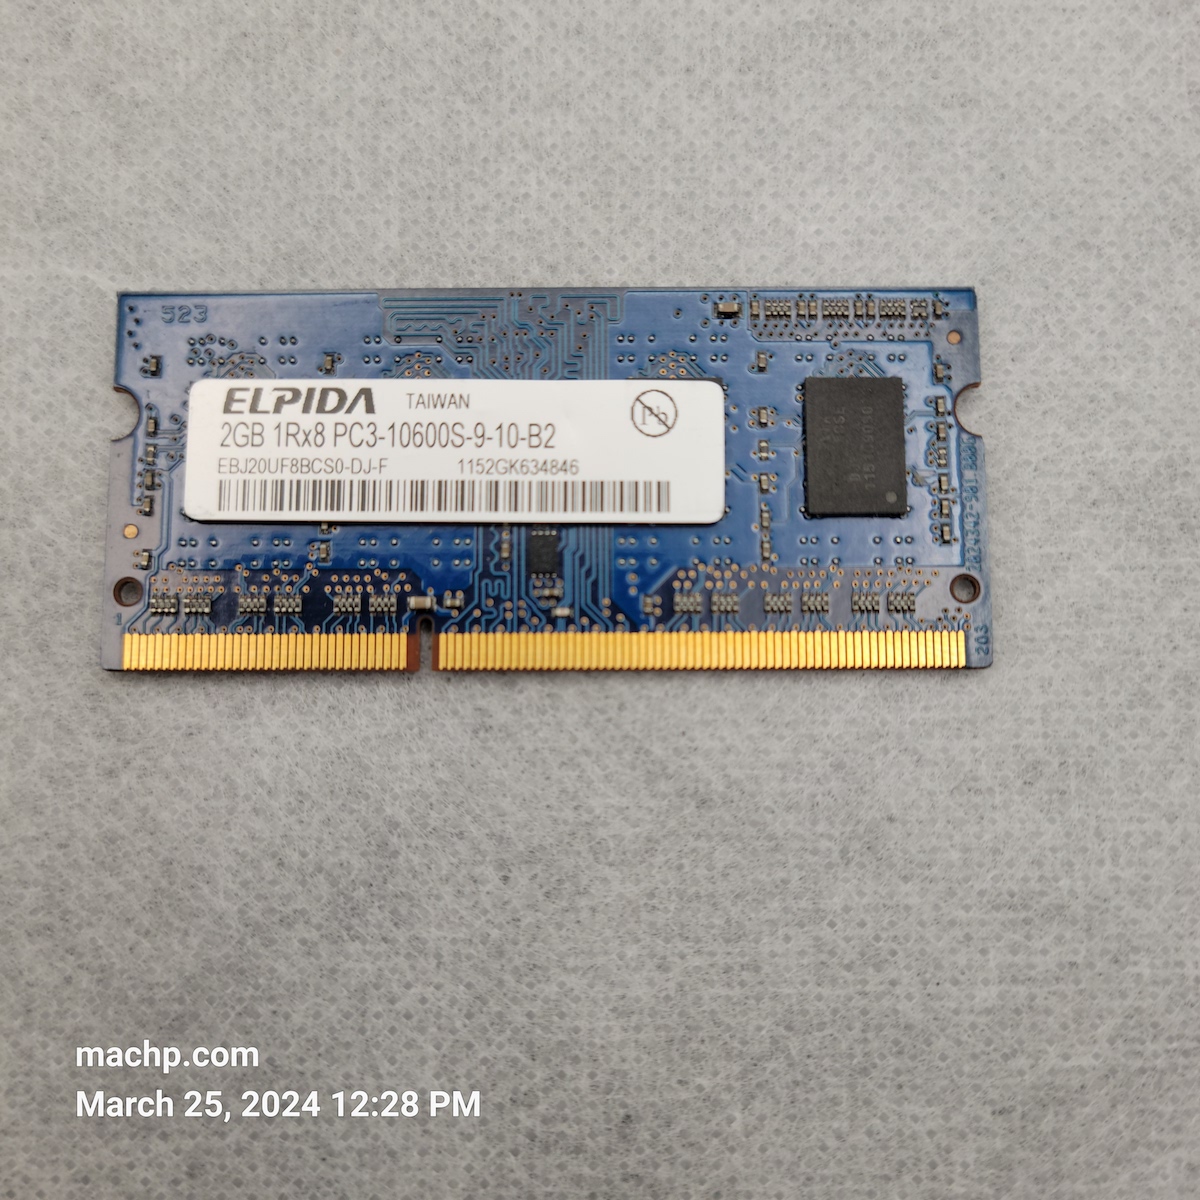 Macbook Pro 2GB 1RX8 PC3-10600-9-10-B2 ELPIDA